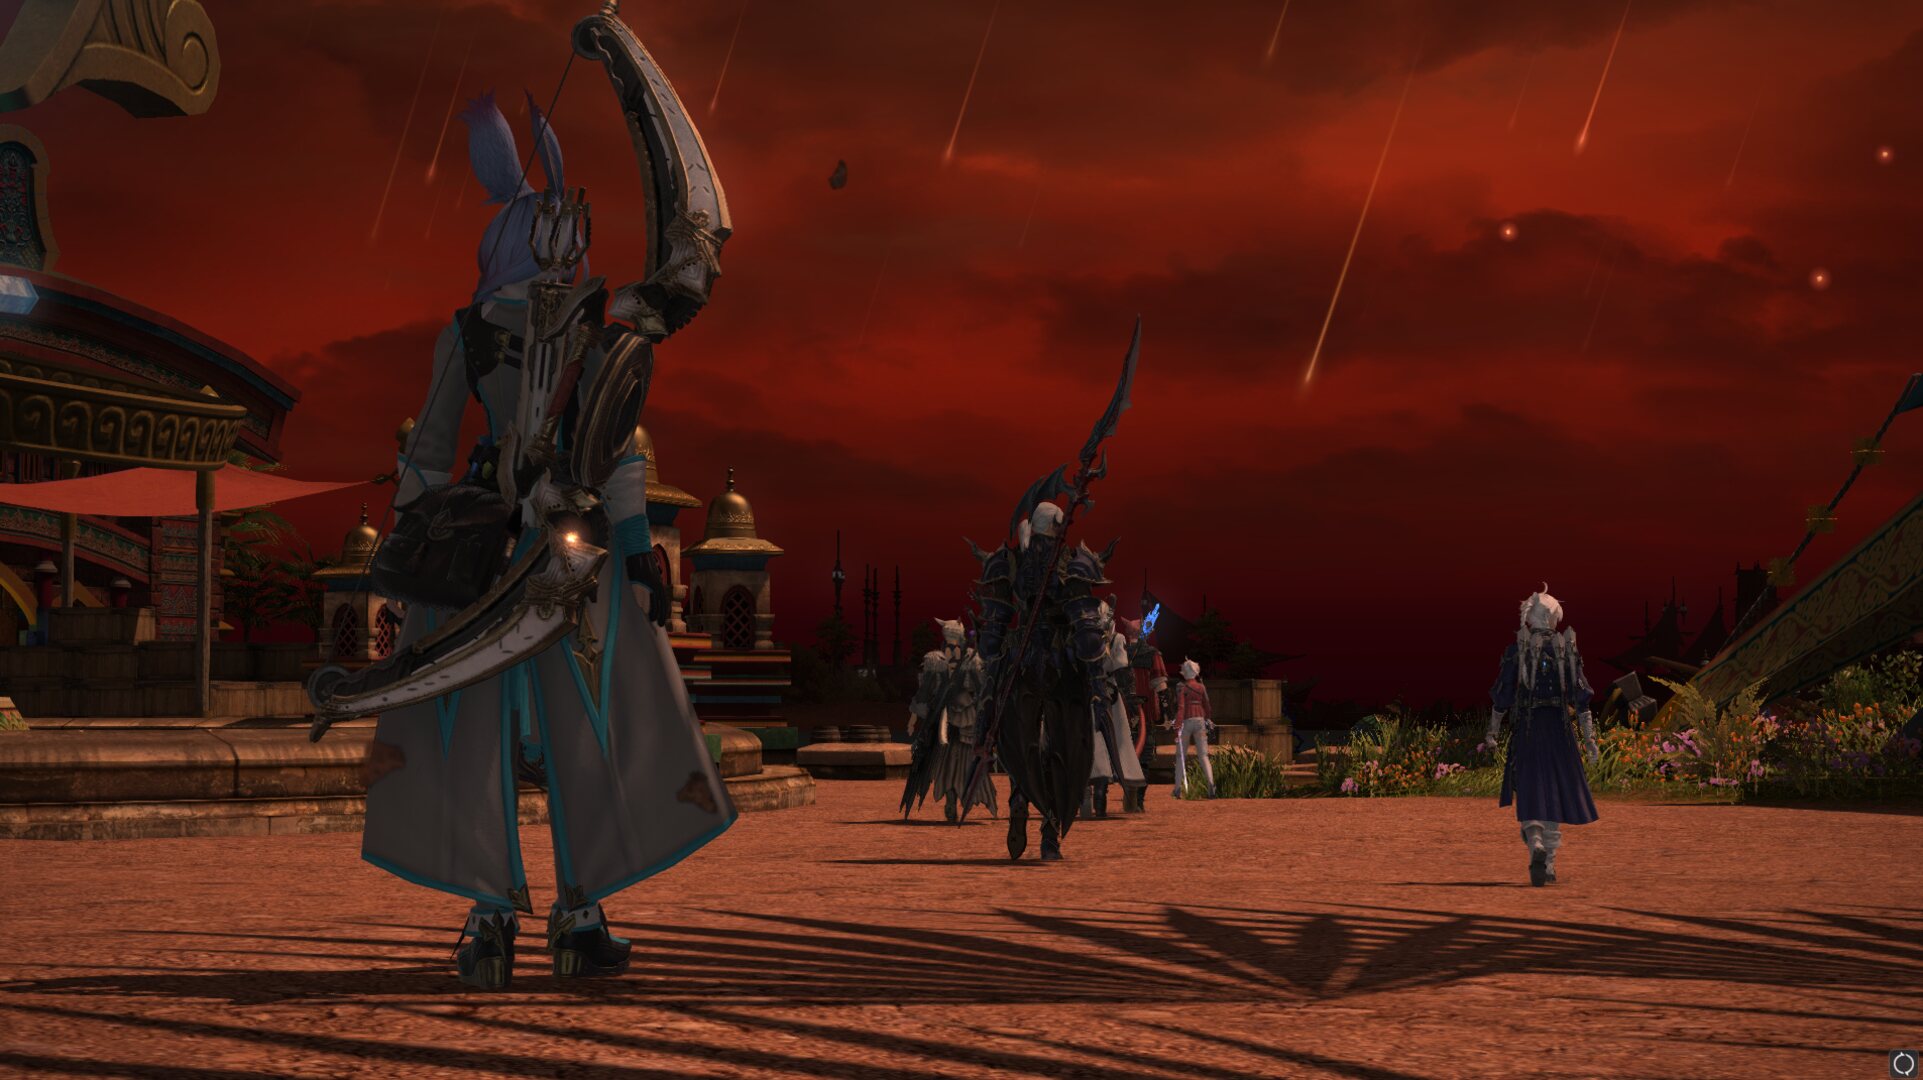 Charaktere, die in Final Fantasy XIV in den Himmel blicken, während er rot wird und das Herannahen der letzten Tage signalisiert